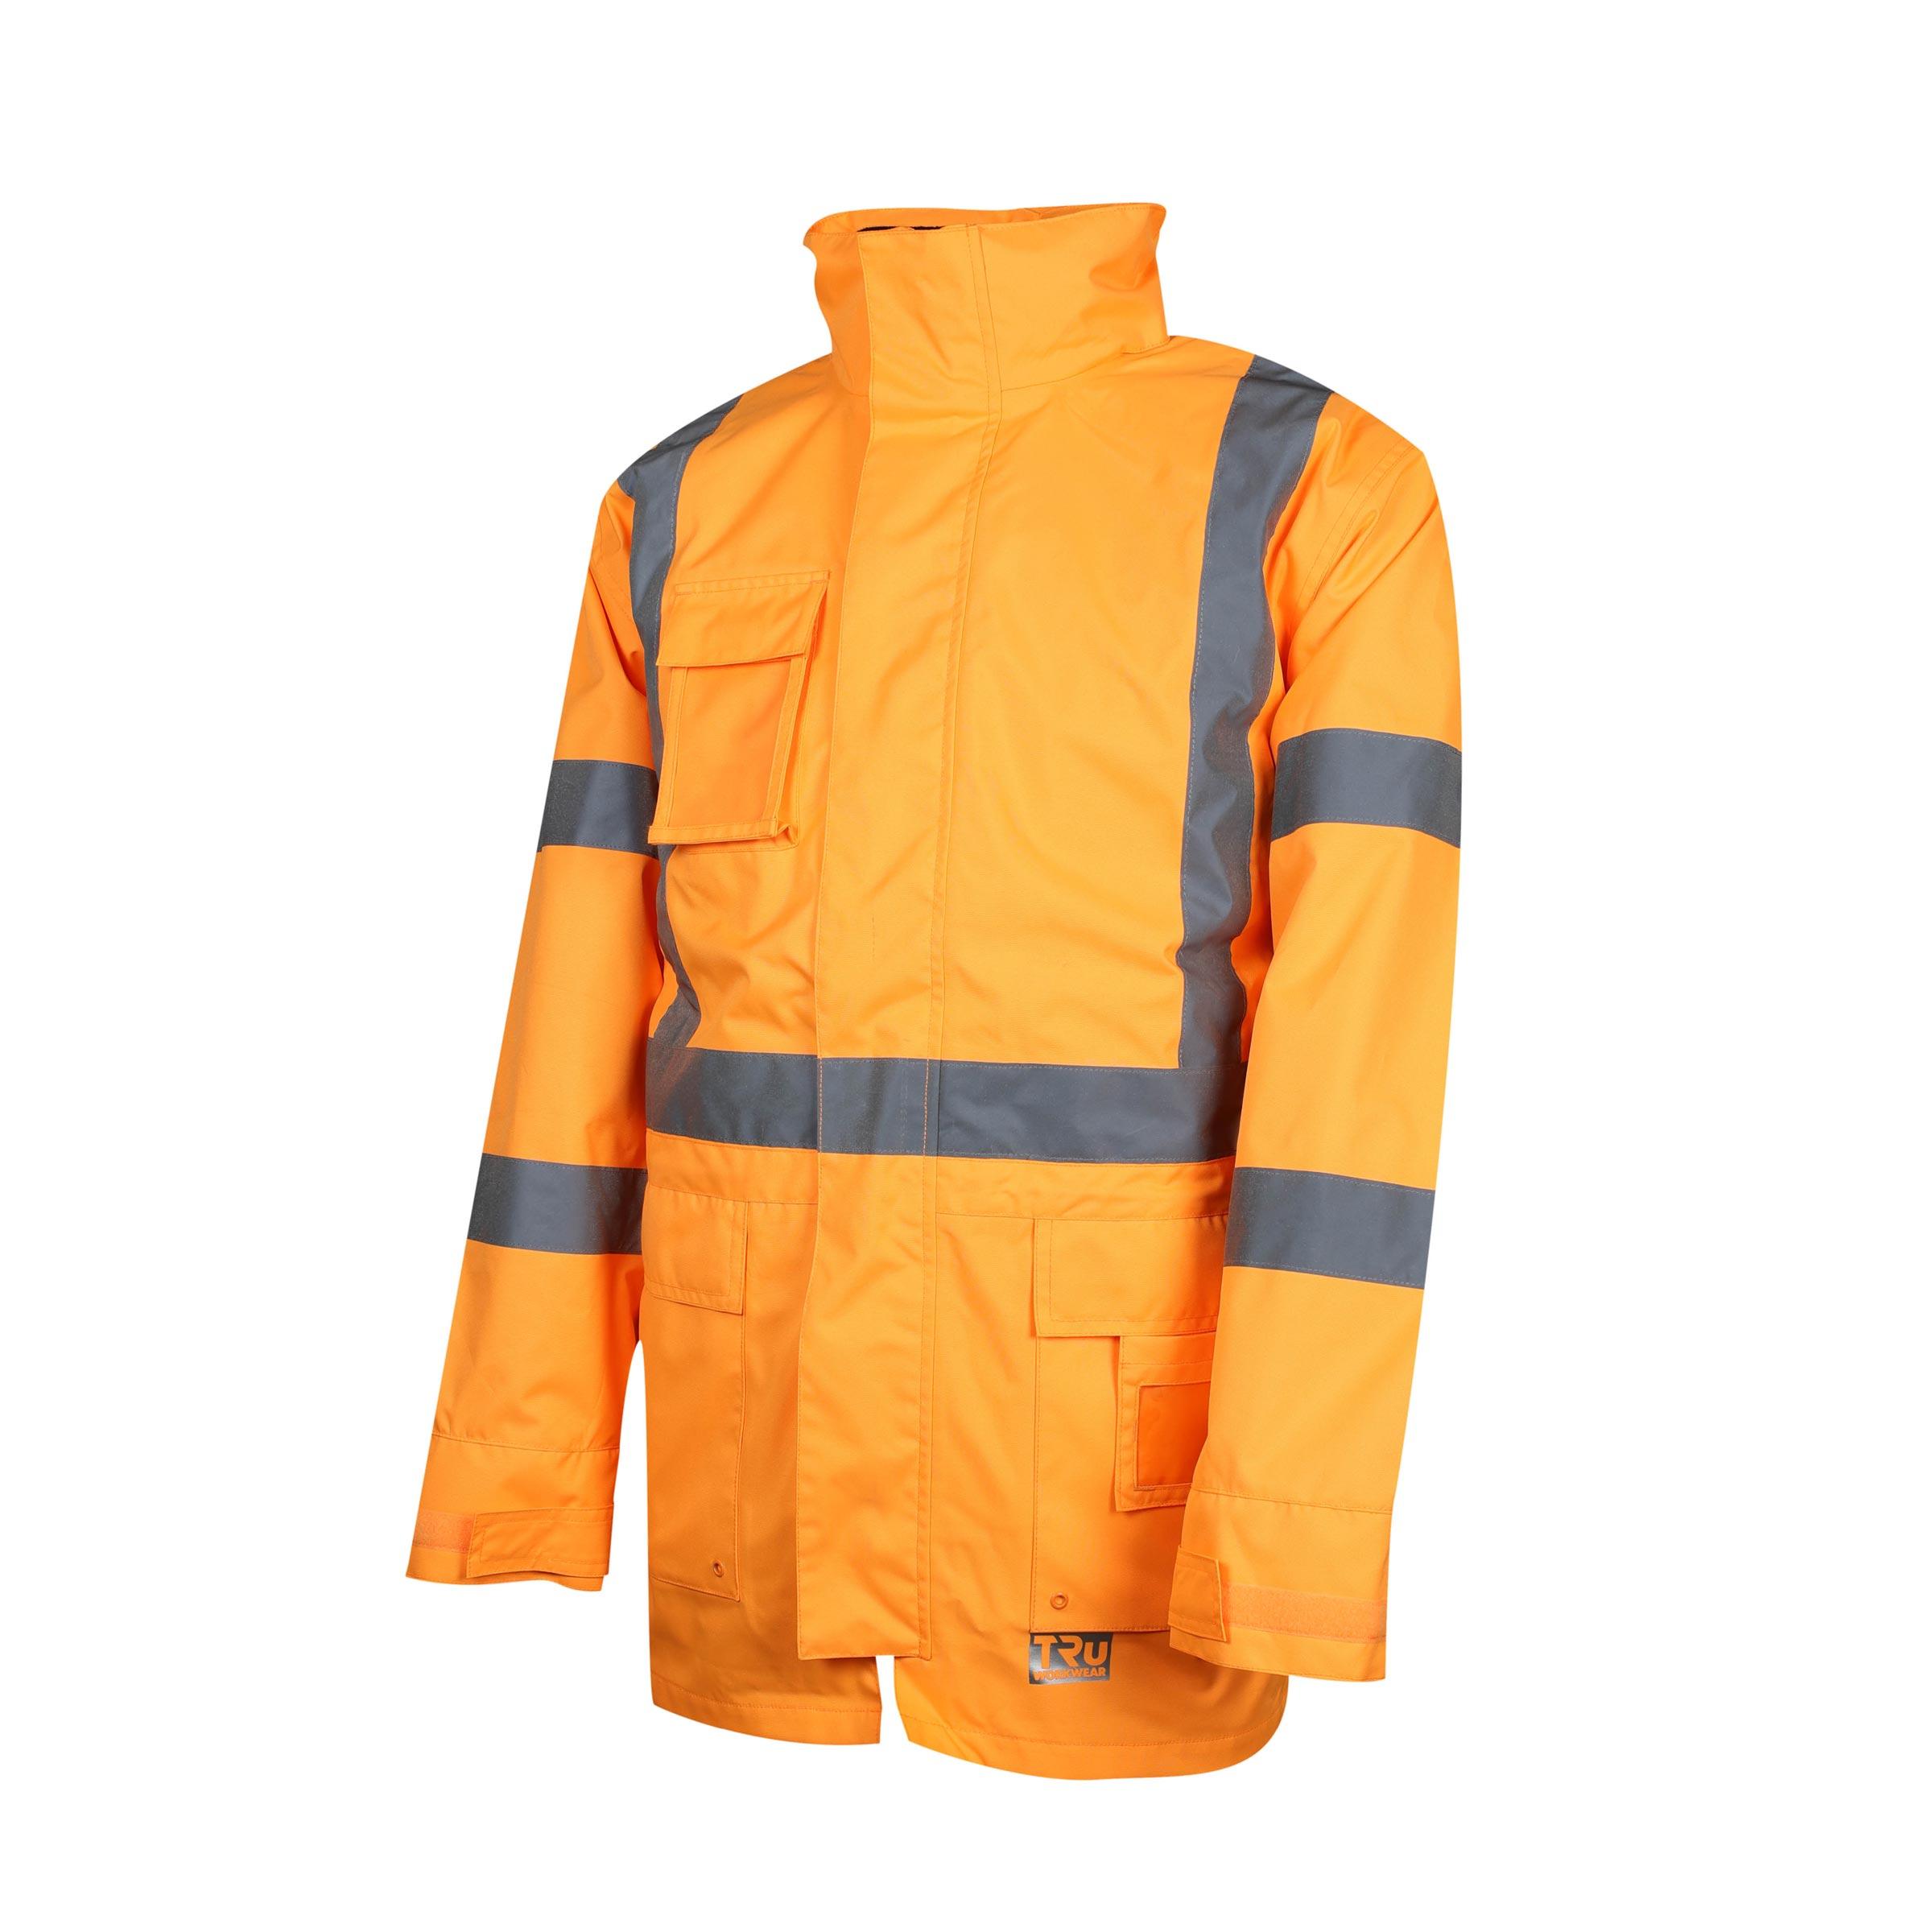 Tru Workwear 4 In 1 Polyester Oxford Jacket With Reflective Tape - NSW Rail-Tru Workwear